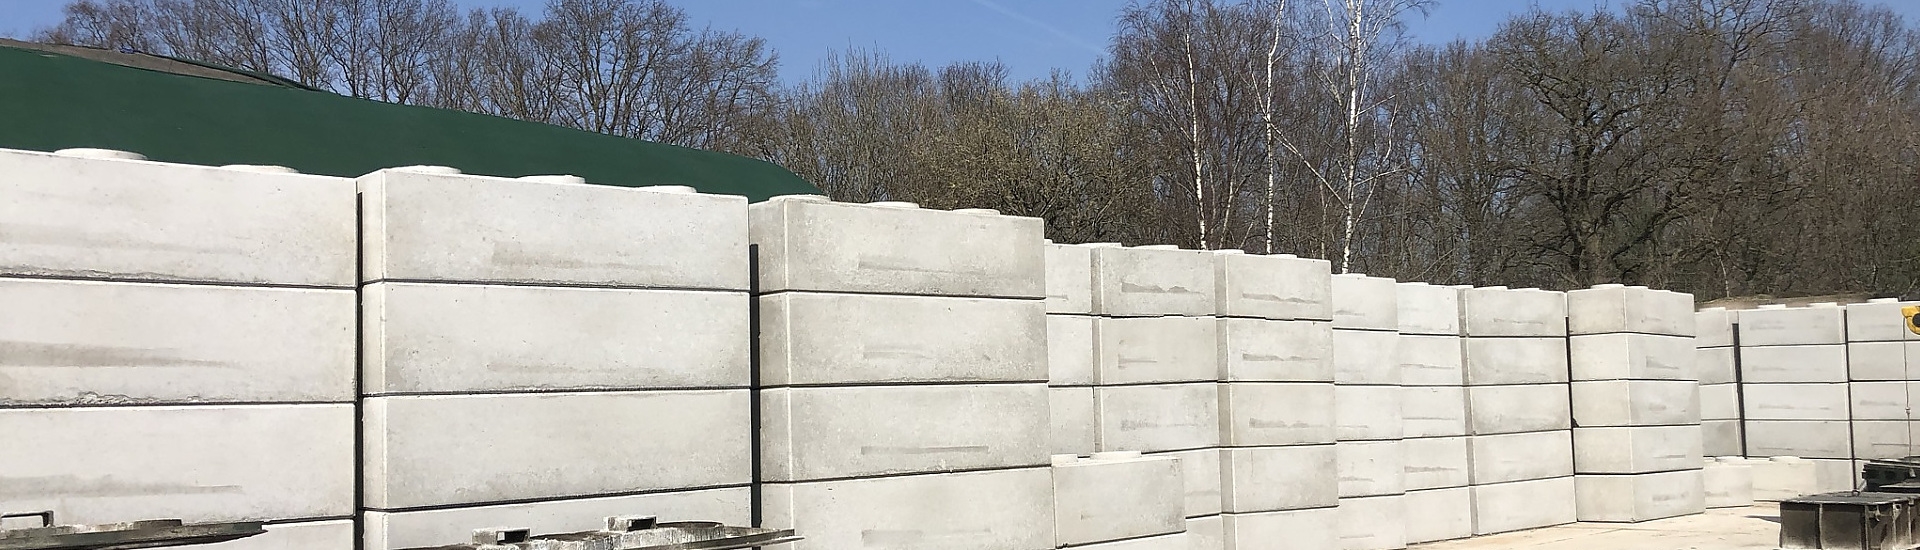 Productie levering beton